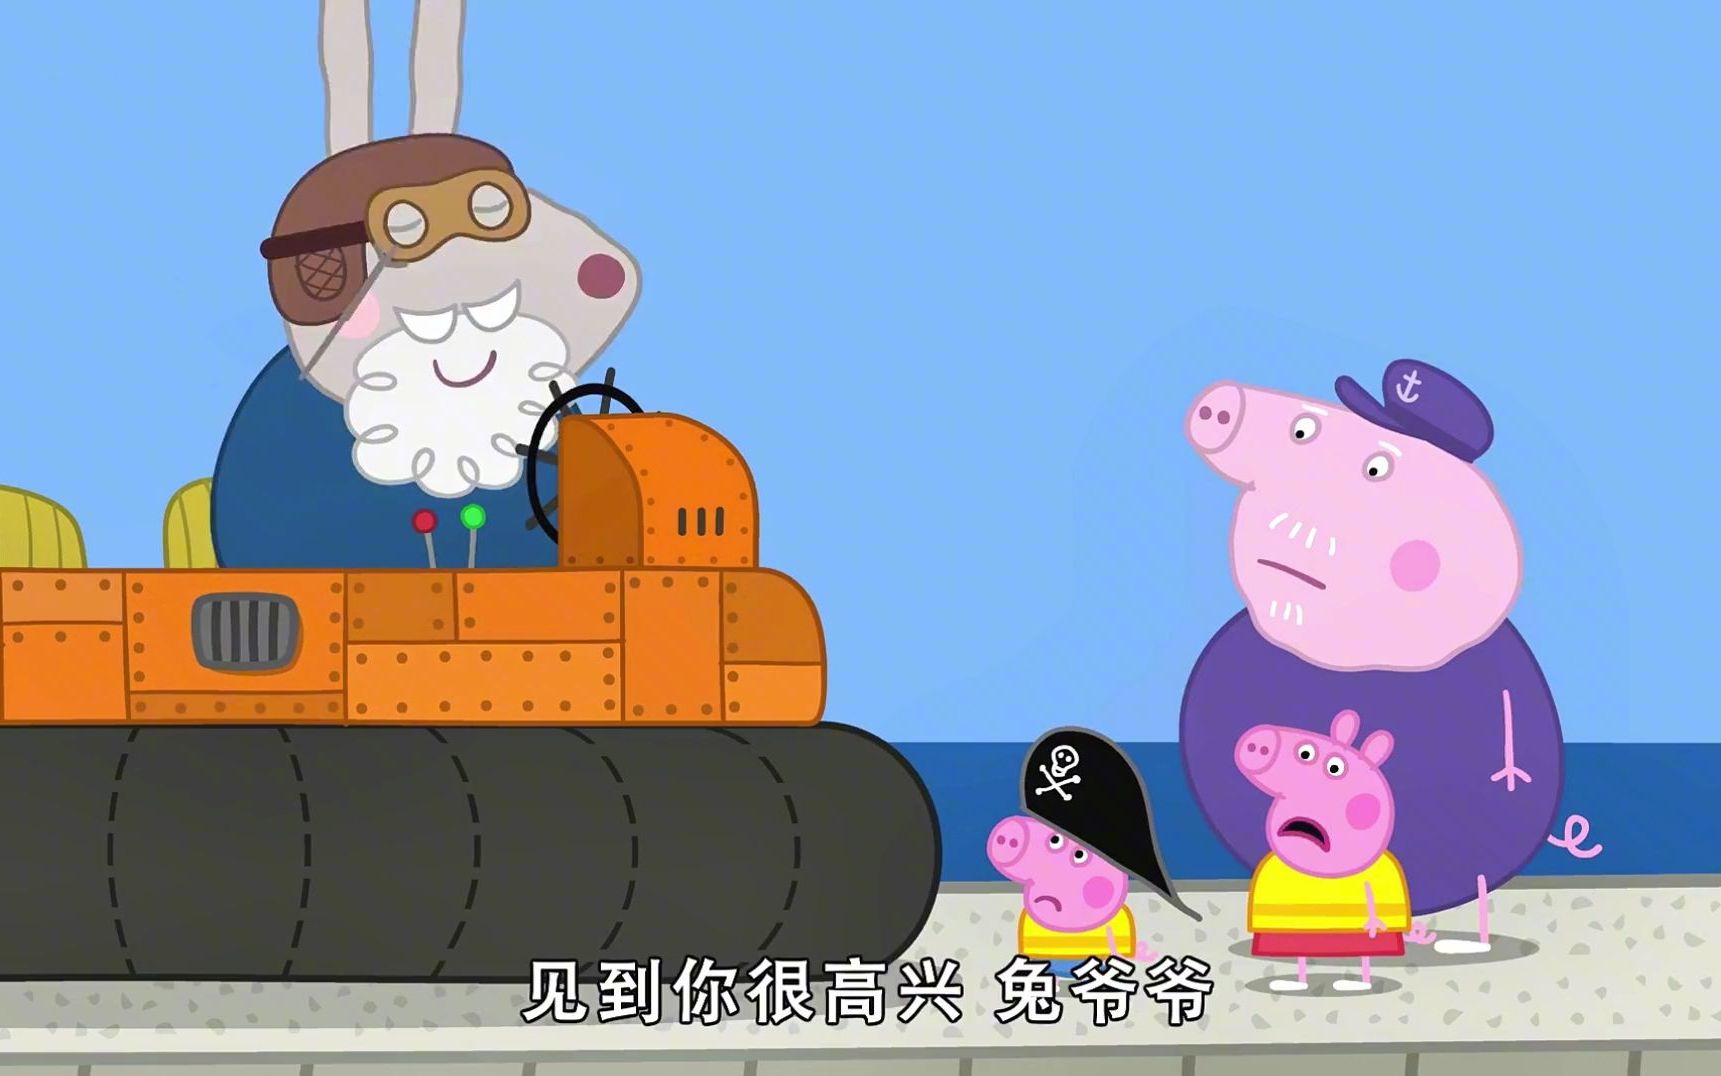 小猪佩奇第七季:猪爷爷的船沉海了,兔爷爷用气垫船带着佩奇出海